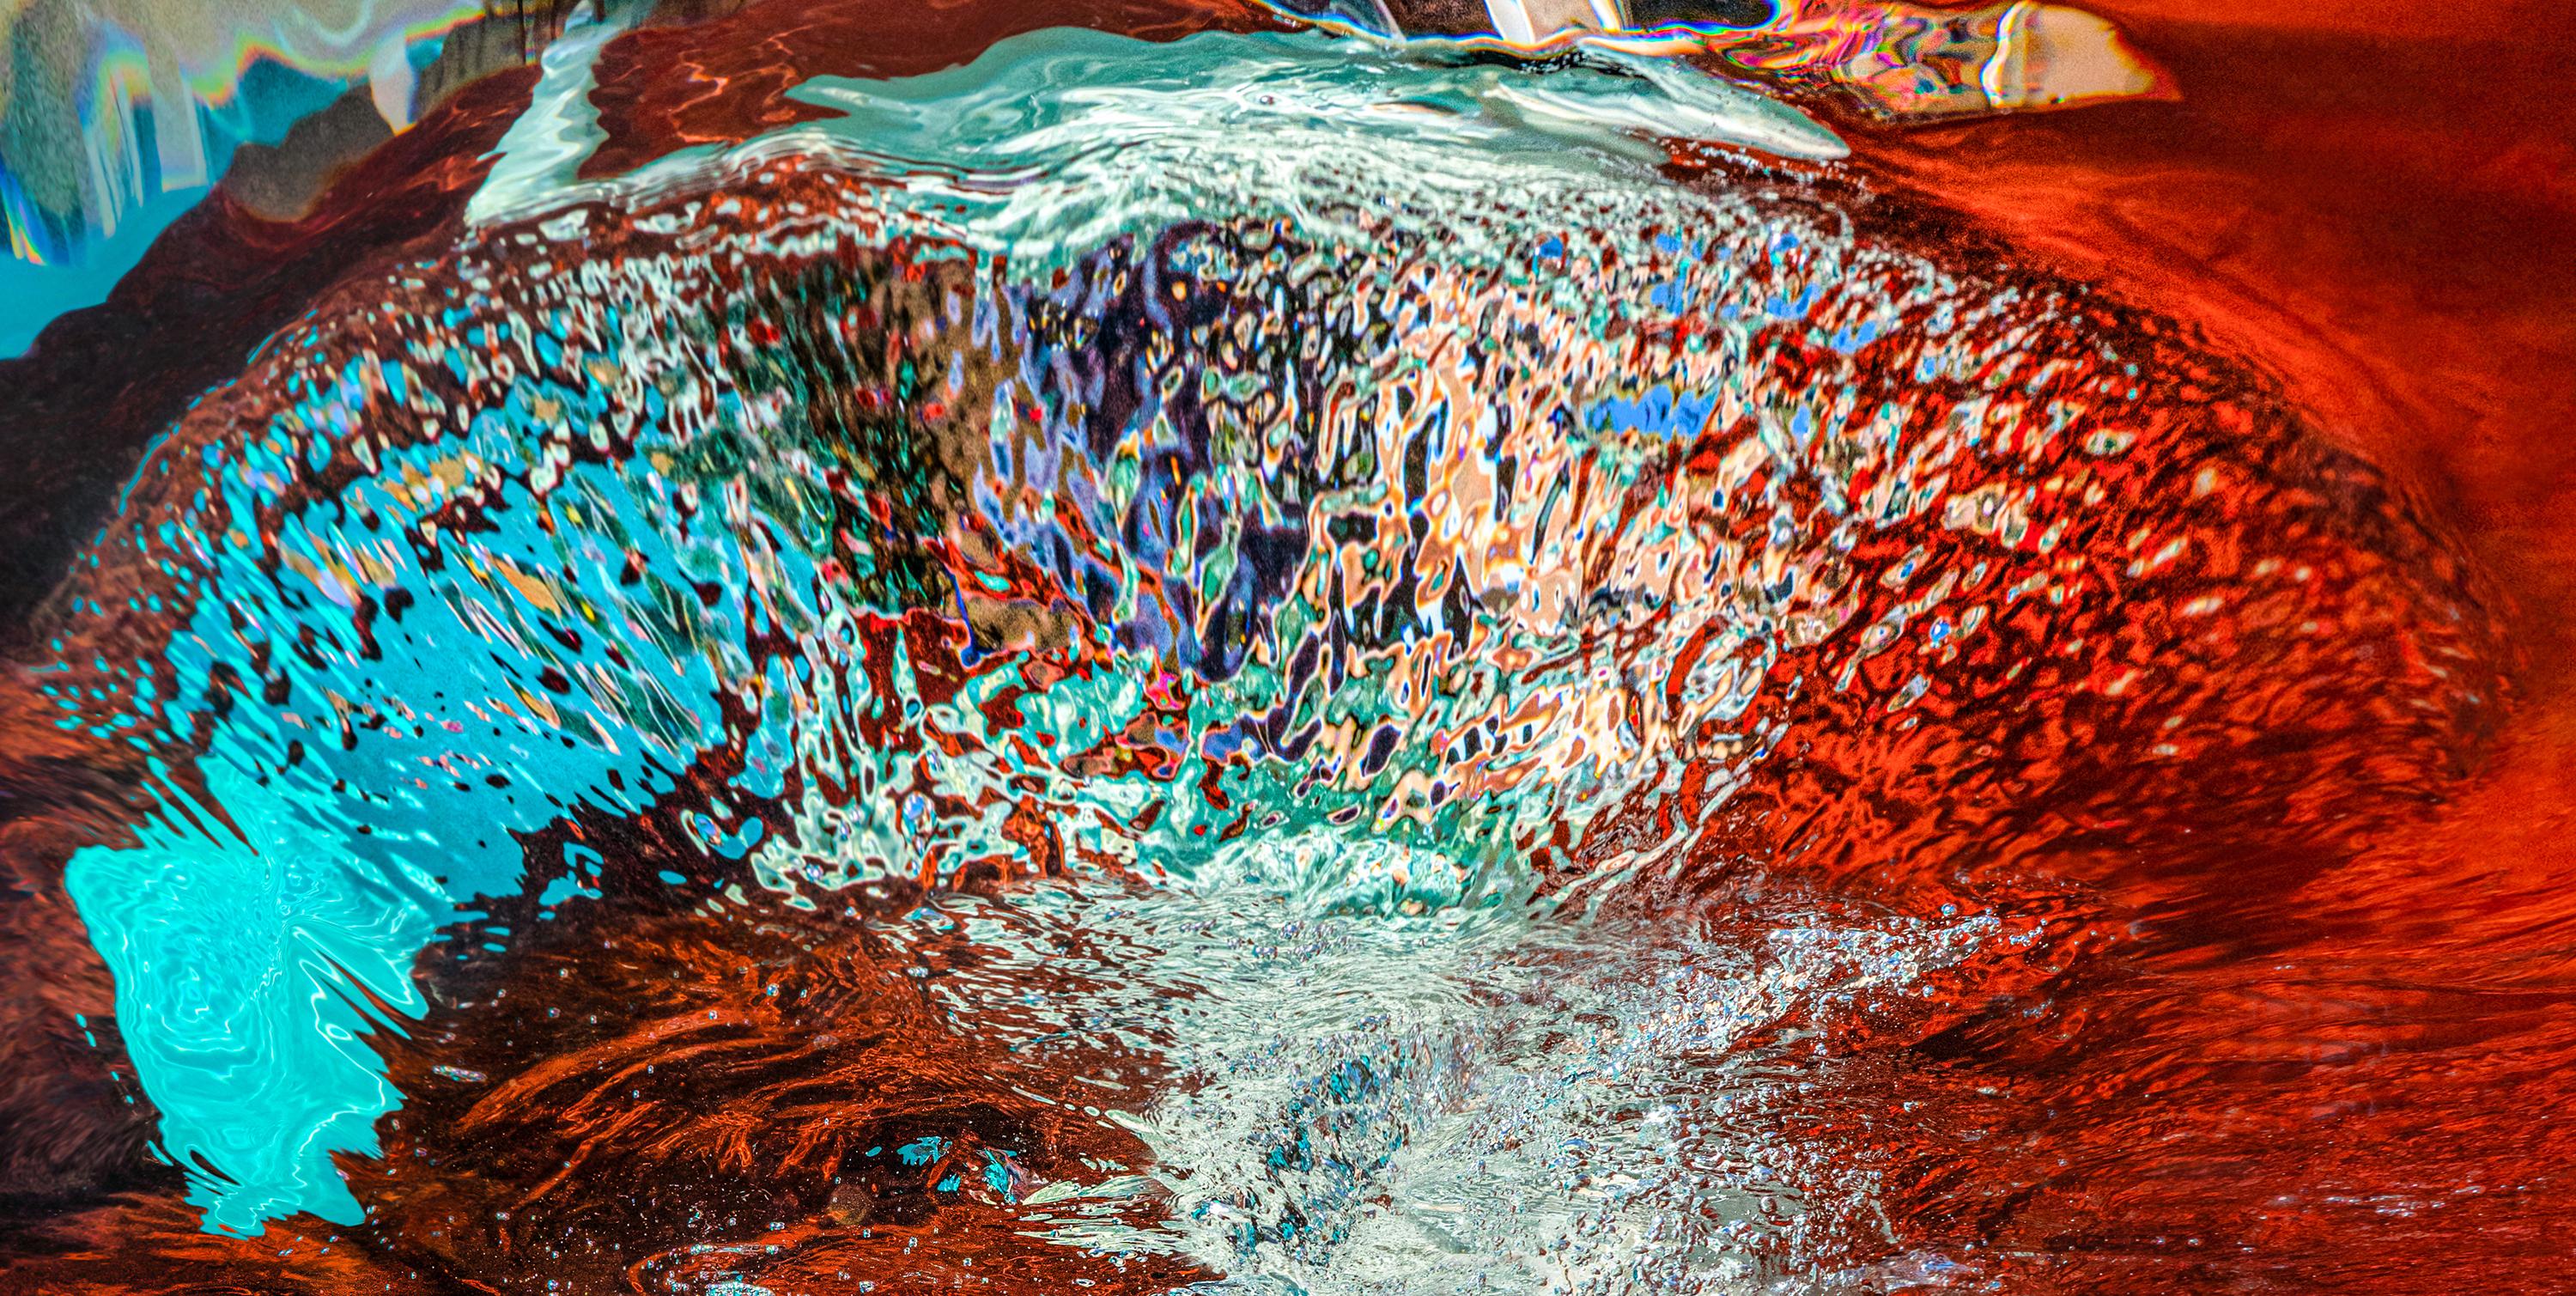 Ein Unterwasser-Aktfoto von einer schönen jungen Frau, die in einem roten Pool taucht.  Wellen und Sonnenstrahlen malen geheimnisvolle Muster auf ihre perfekten Brüste.

Original-Pigmentdruck in Galeriequalität, vom Künstler signiert.
Limitierte